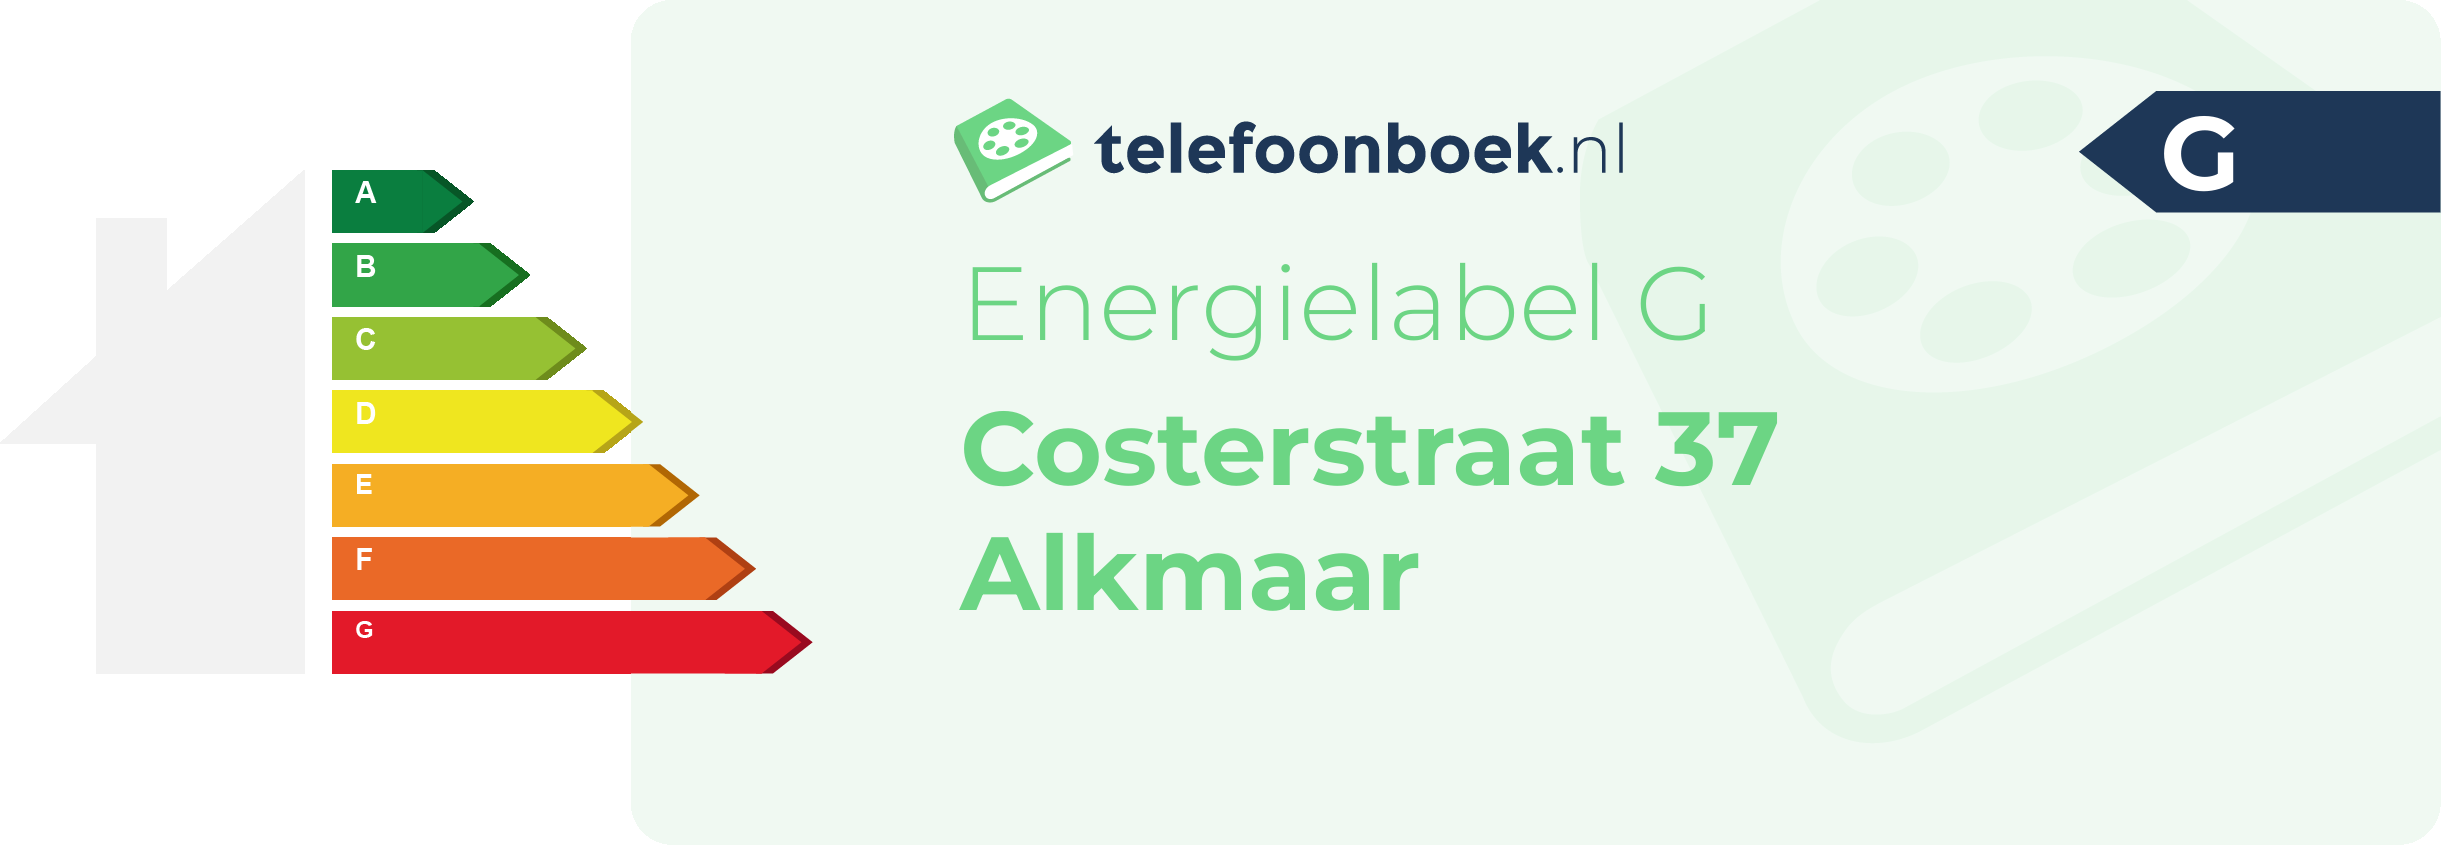 Energielabel Costerstraat 37 Alkmaar